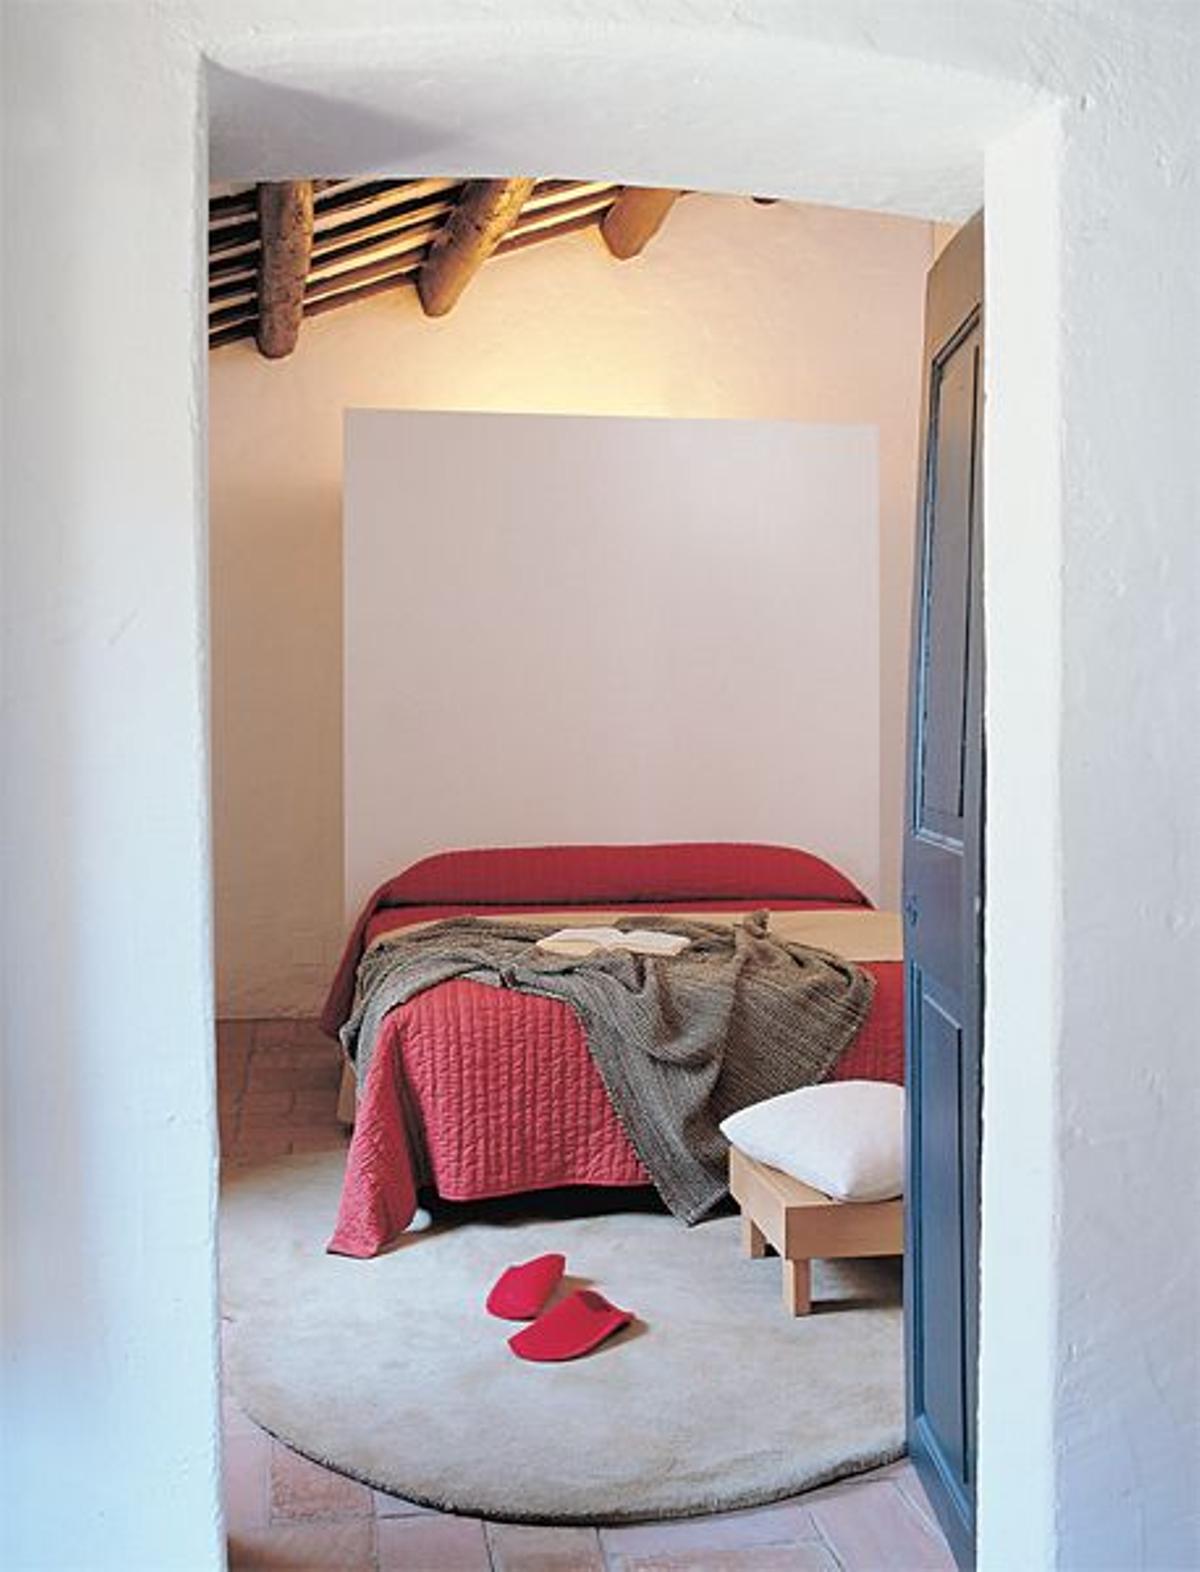 CABECERO DE OBRA. En el dormitorio principal, la cama descansa en un cabecero de obra pintado de bla